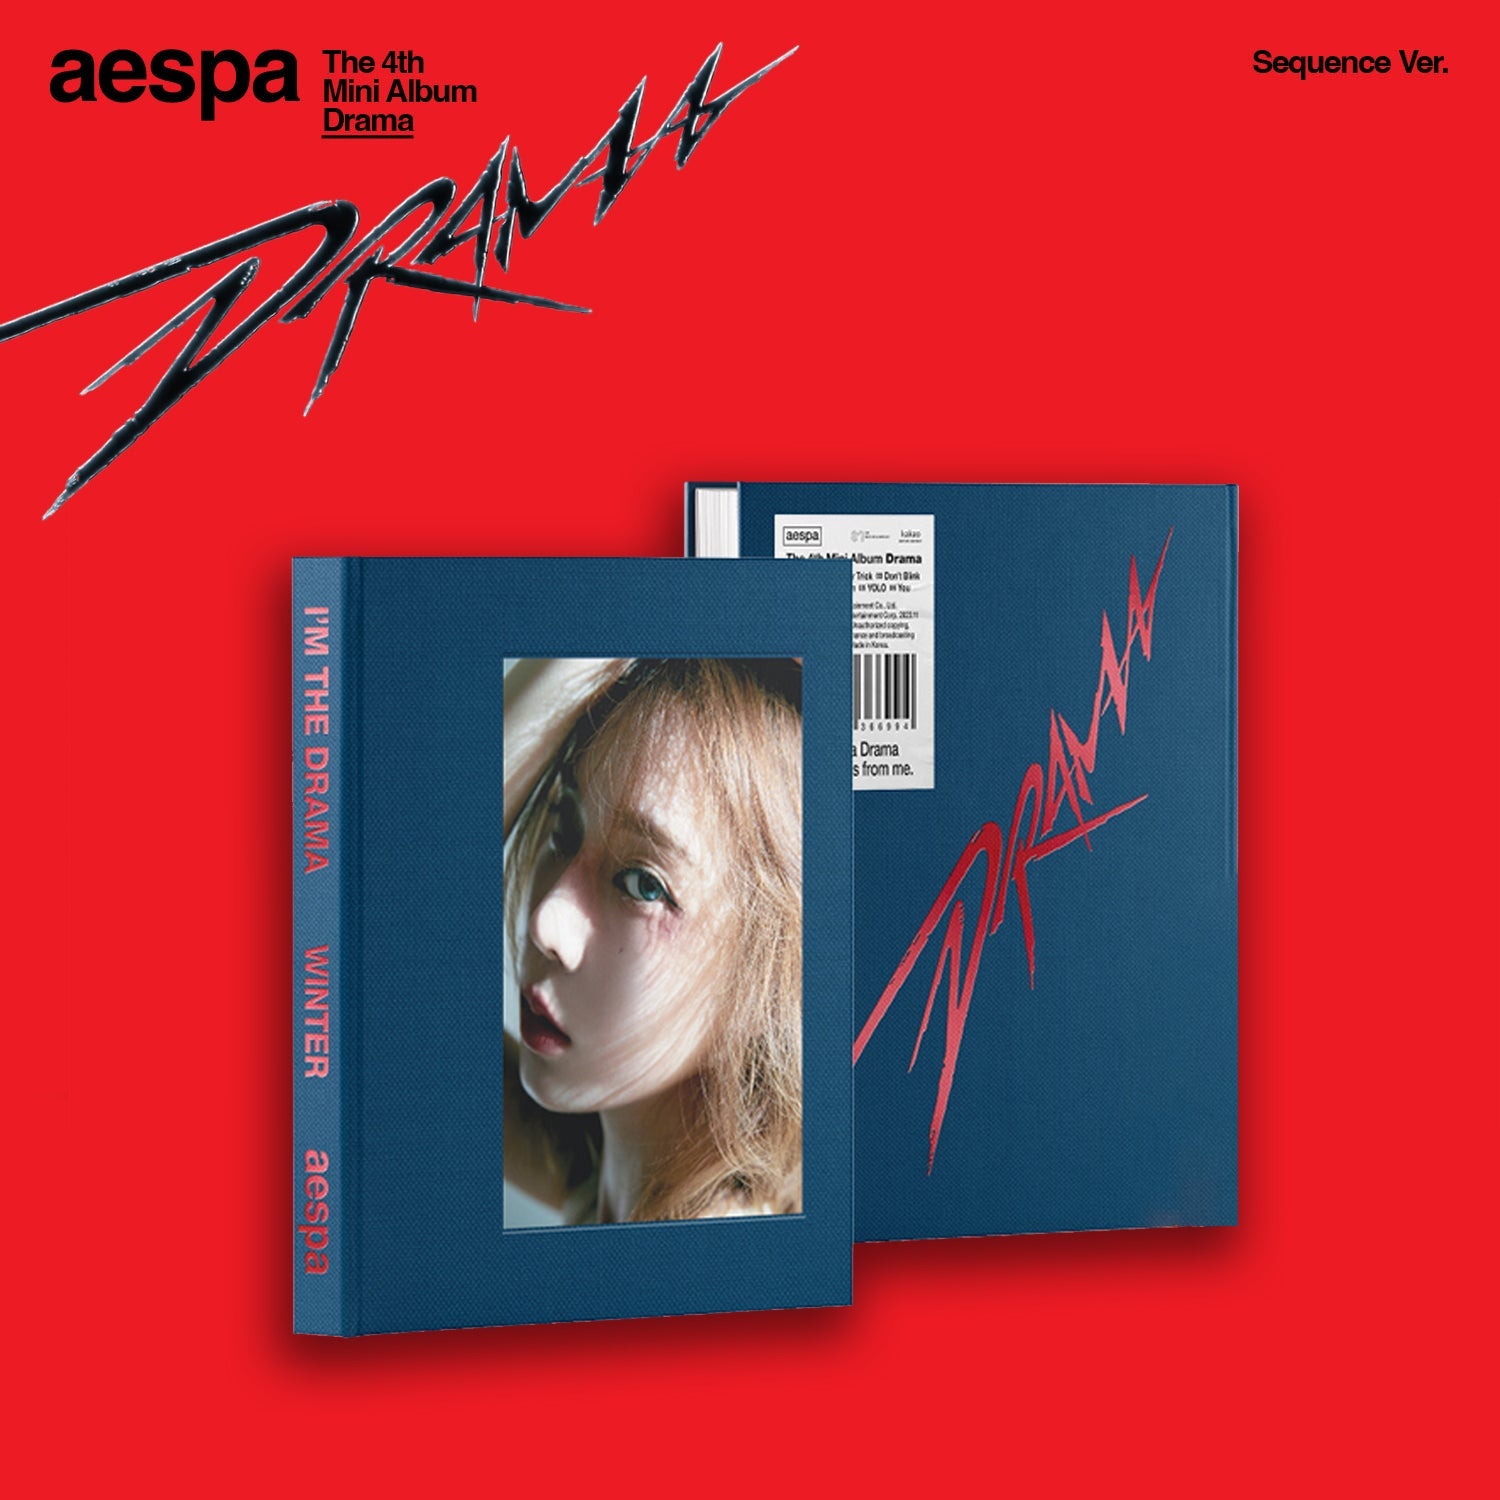 AESPA 4TH MINI ALBUM 'DRAMA' (SEQUENCE) WINTER VERSION COVER